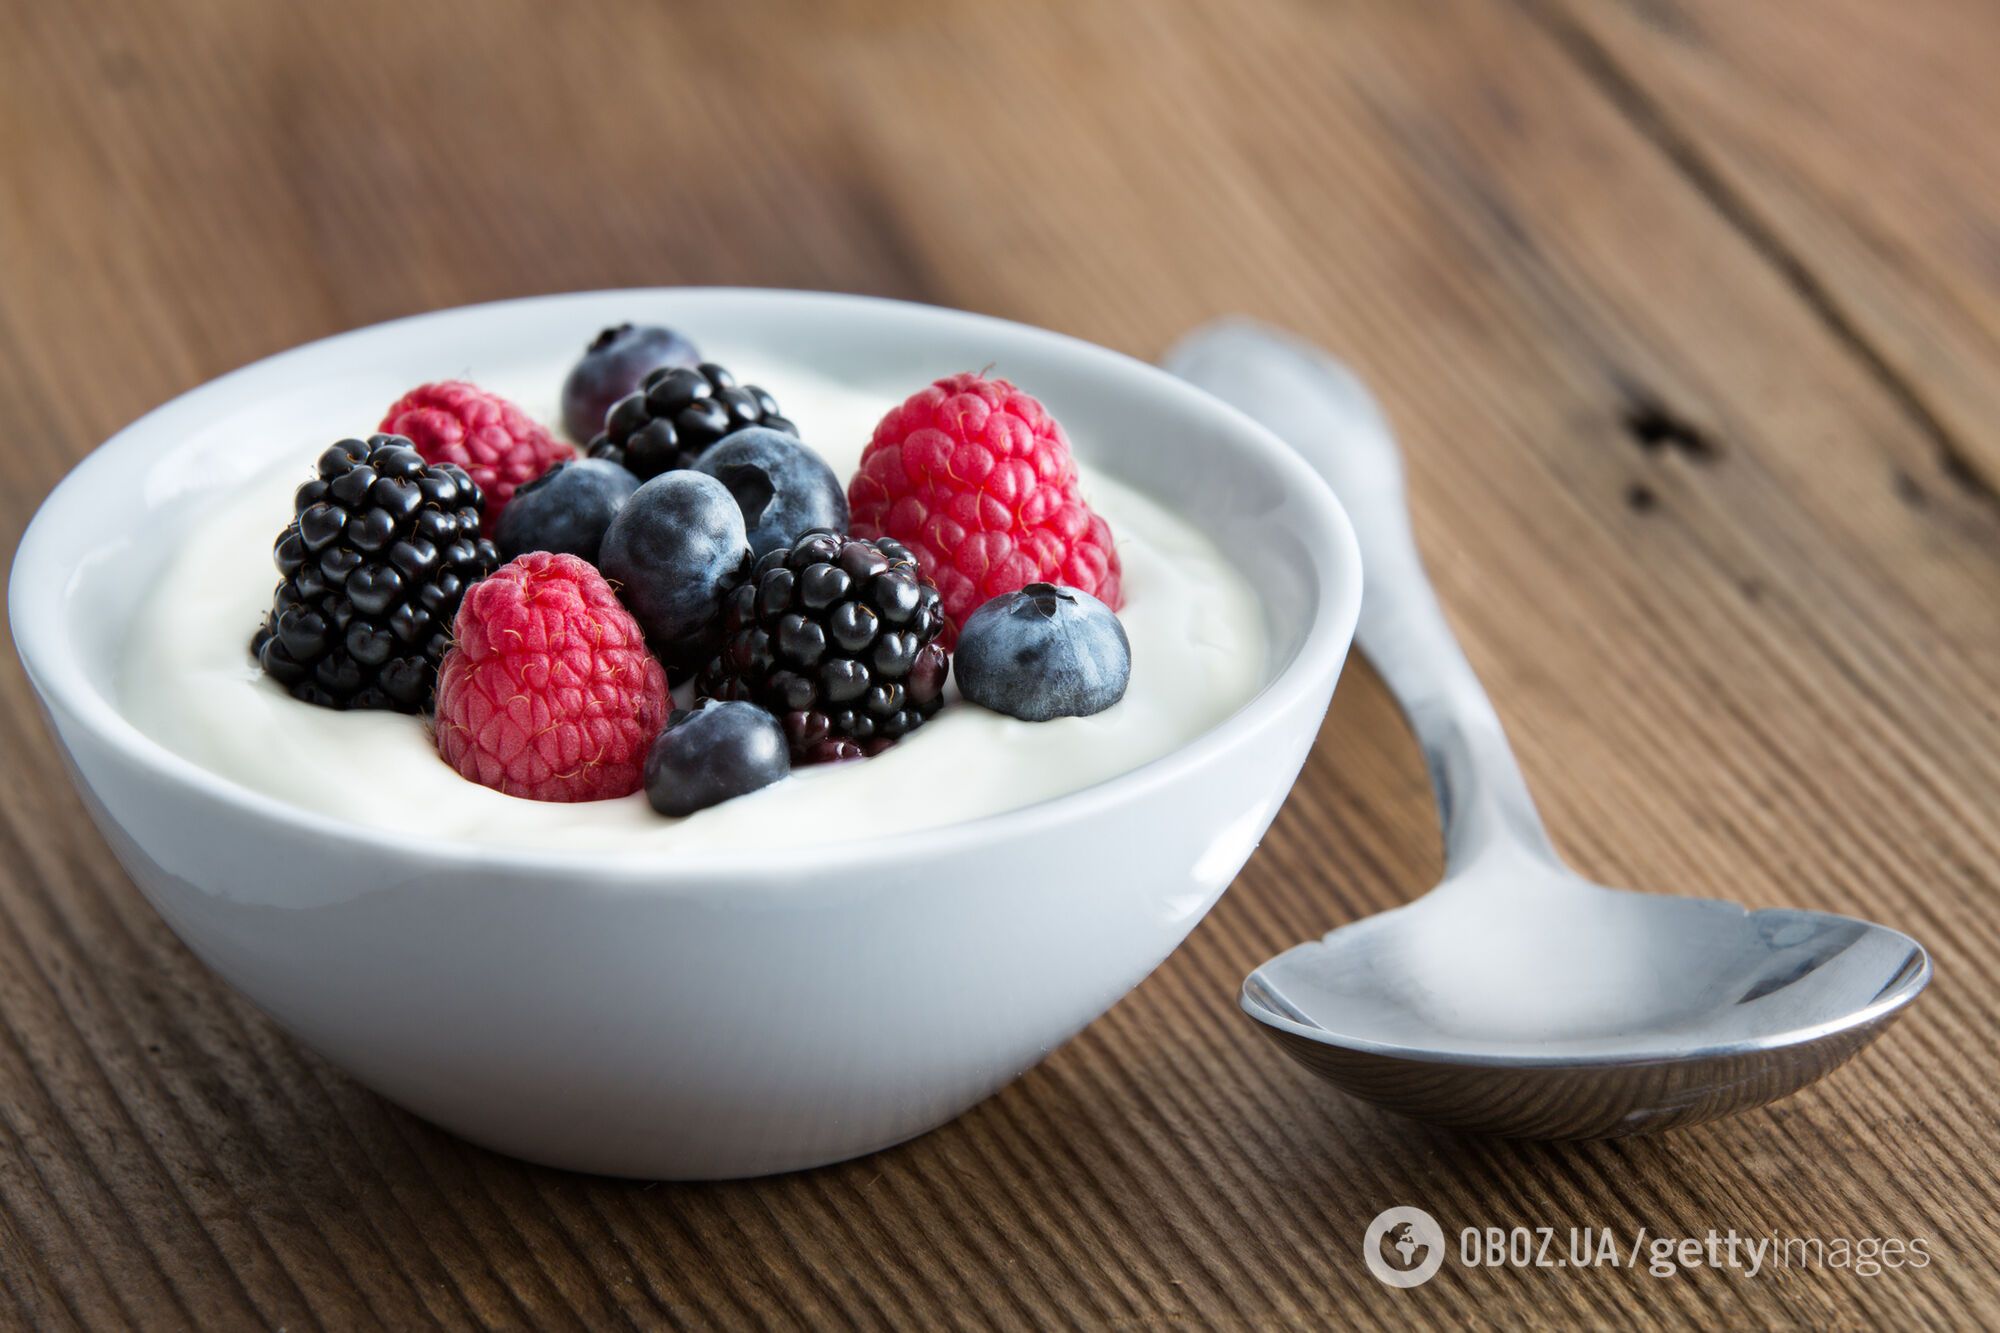 Йогурт полезен для профилактики остеопороза